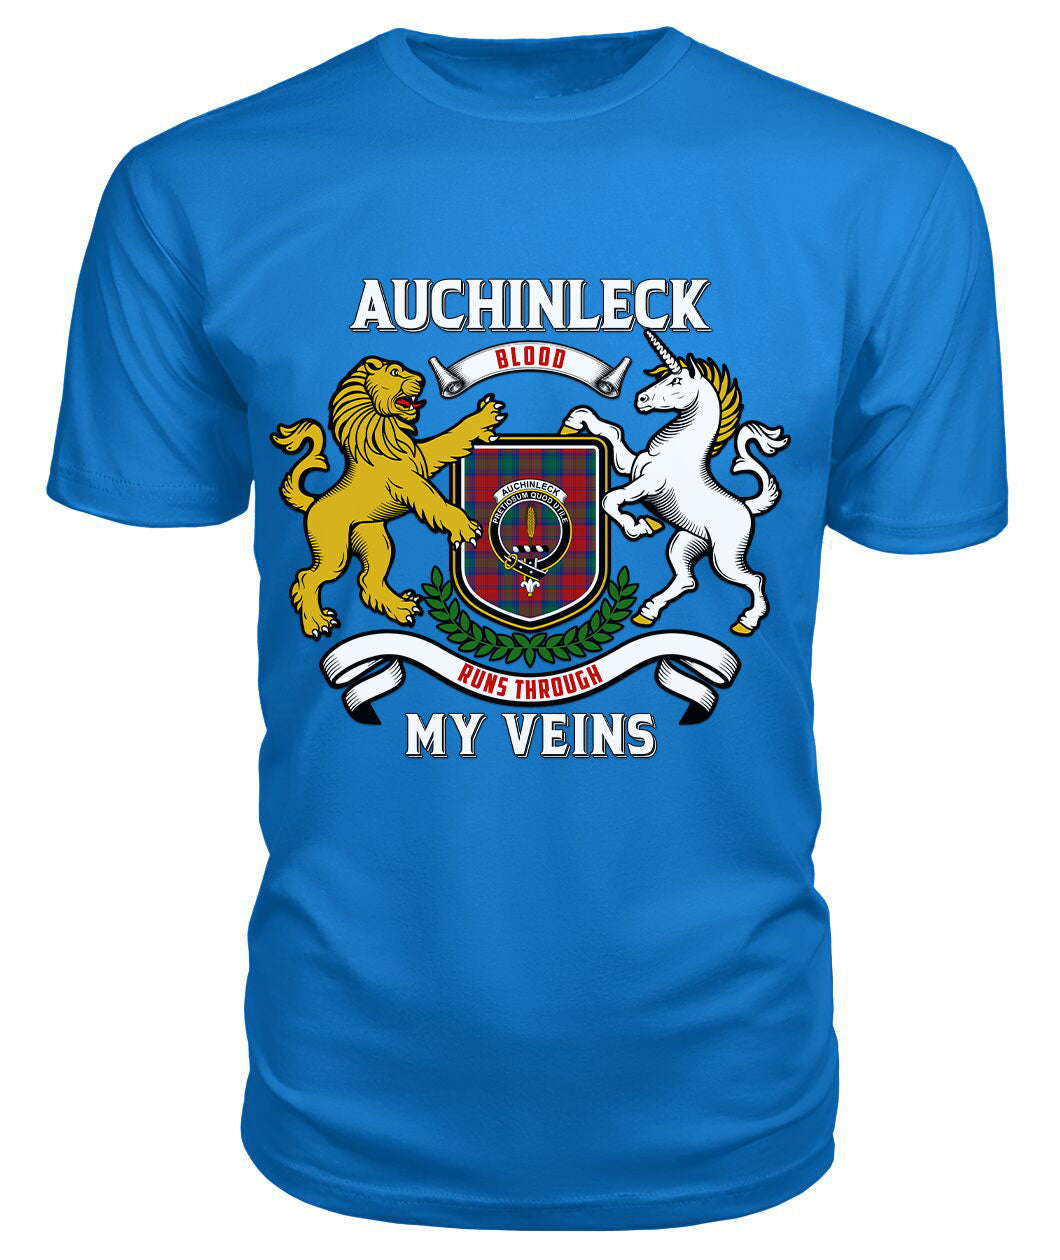 Auchinleck Tartan Crest 2D T-shirt - Blood Runs Through My Veins Style